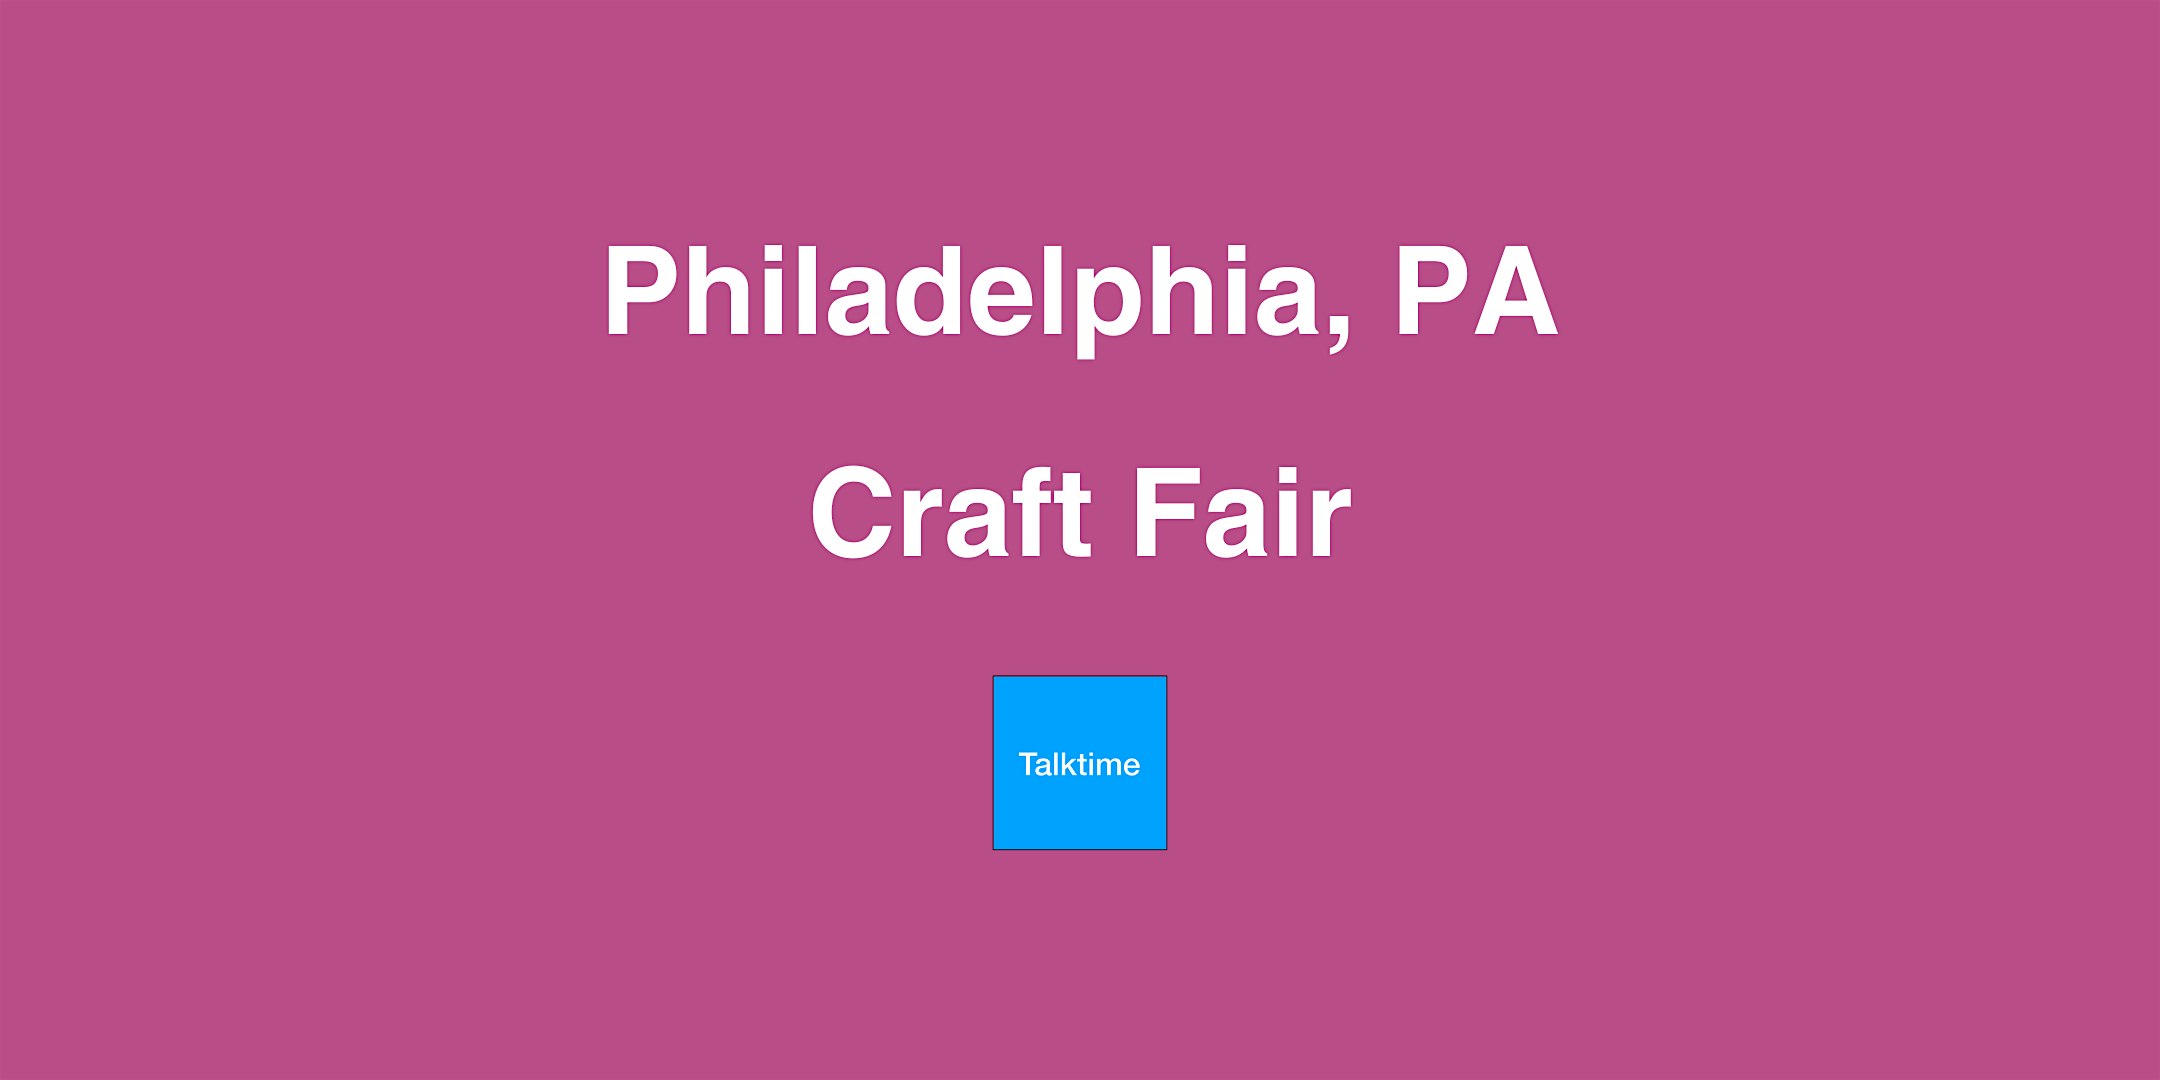 Craft Fair - Philadelphia